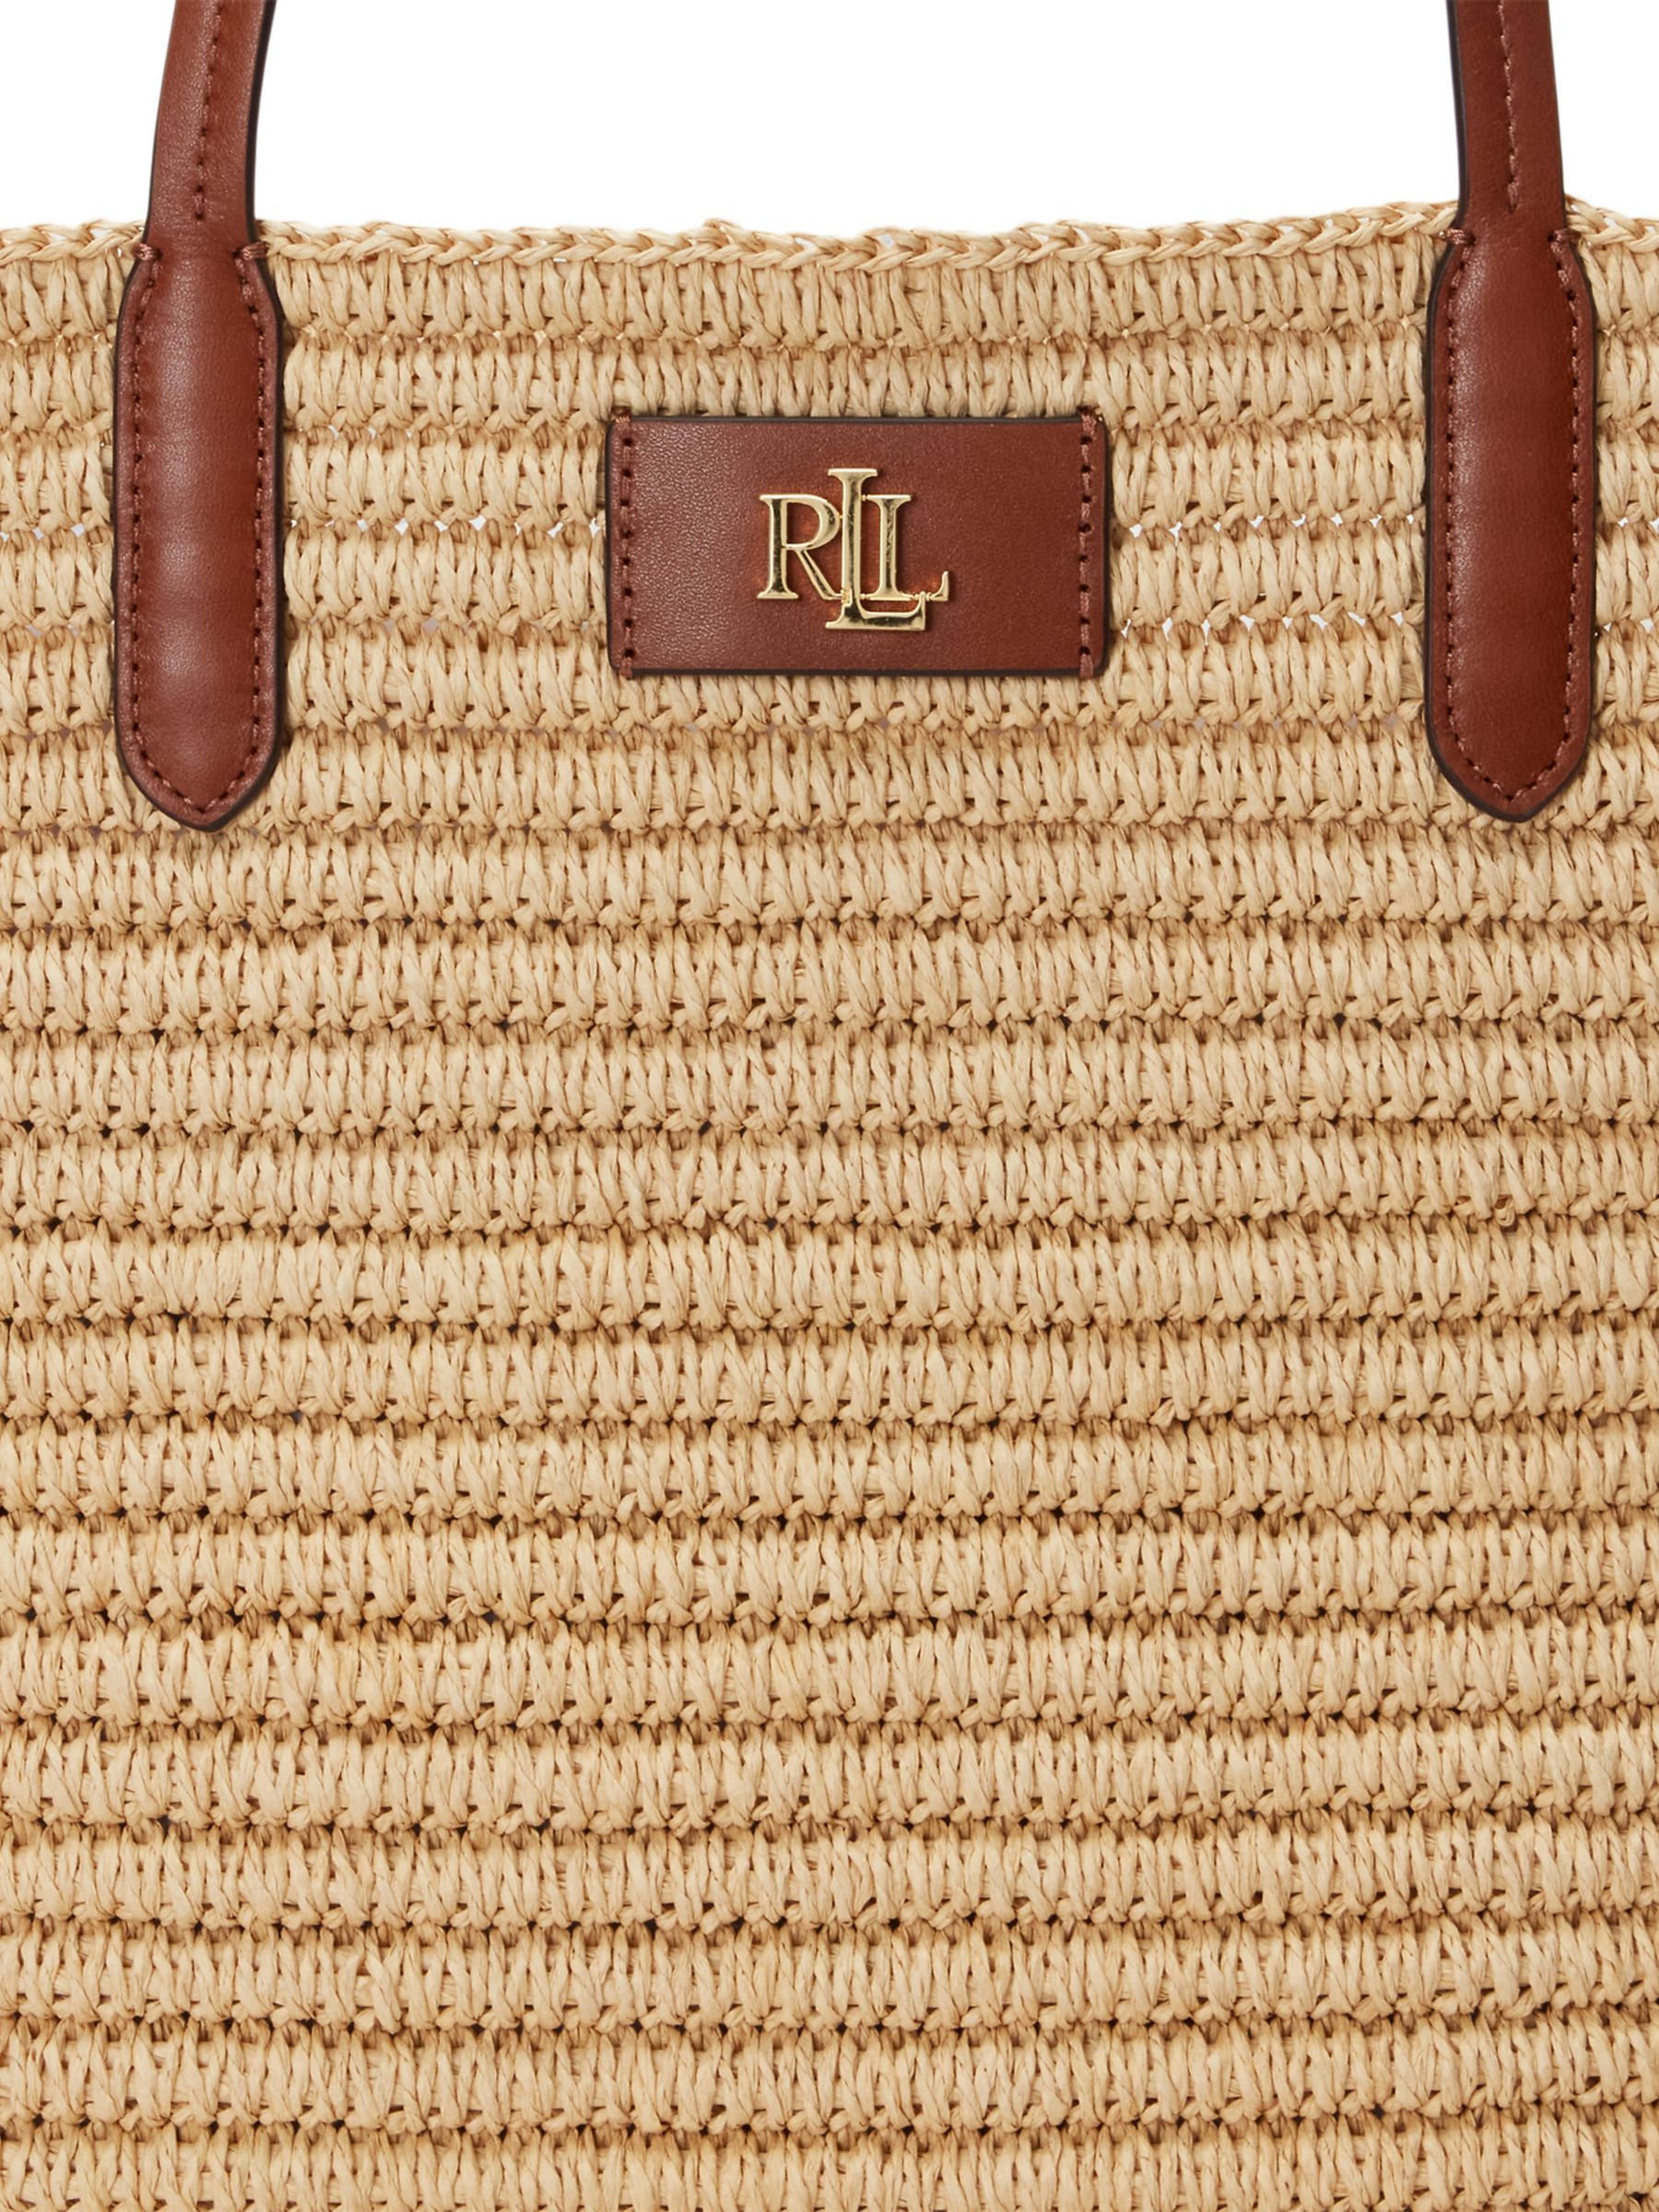 Ralph Lauren Lauren Ralph Lauren Brie Large Tote Bag, Natural/Lauren Tan